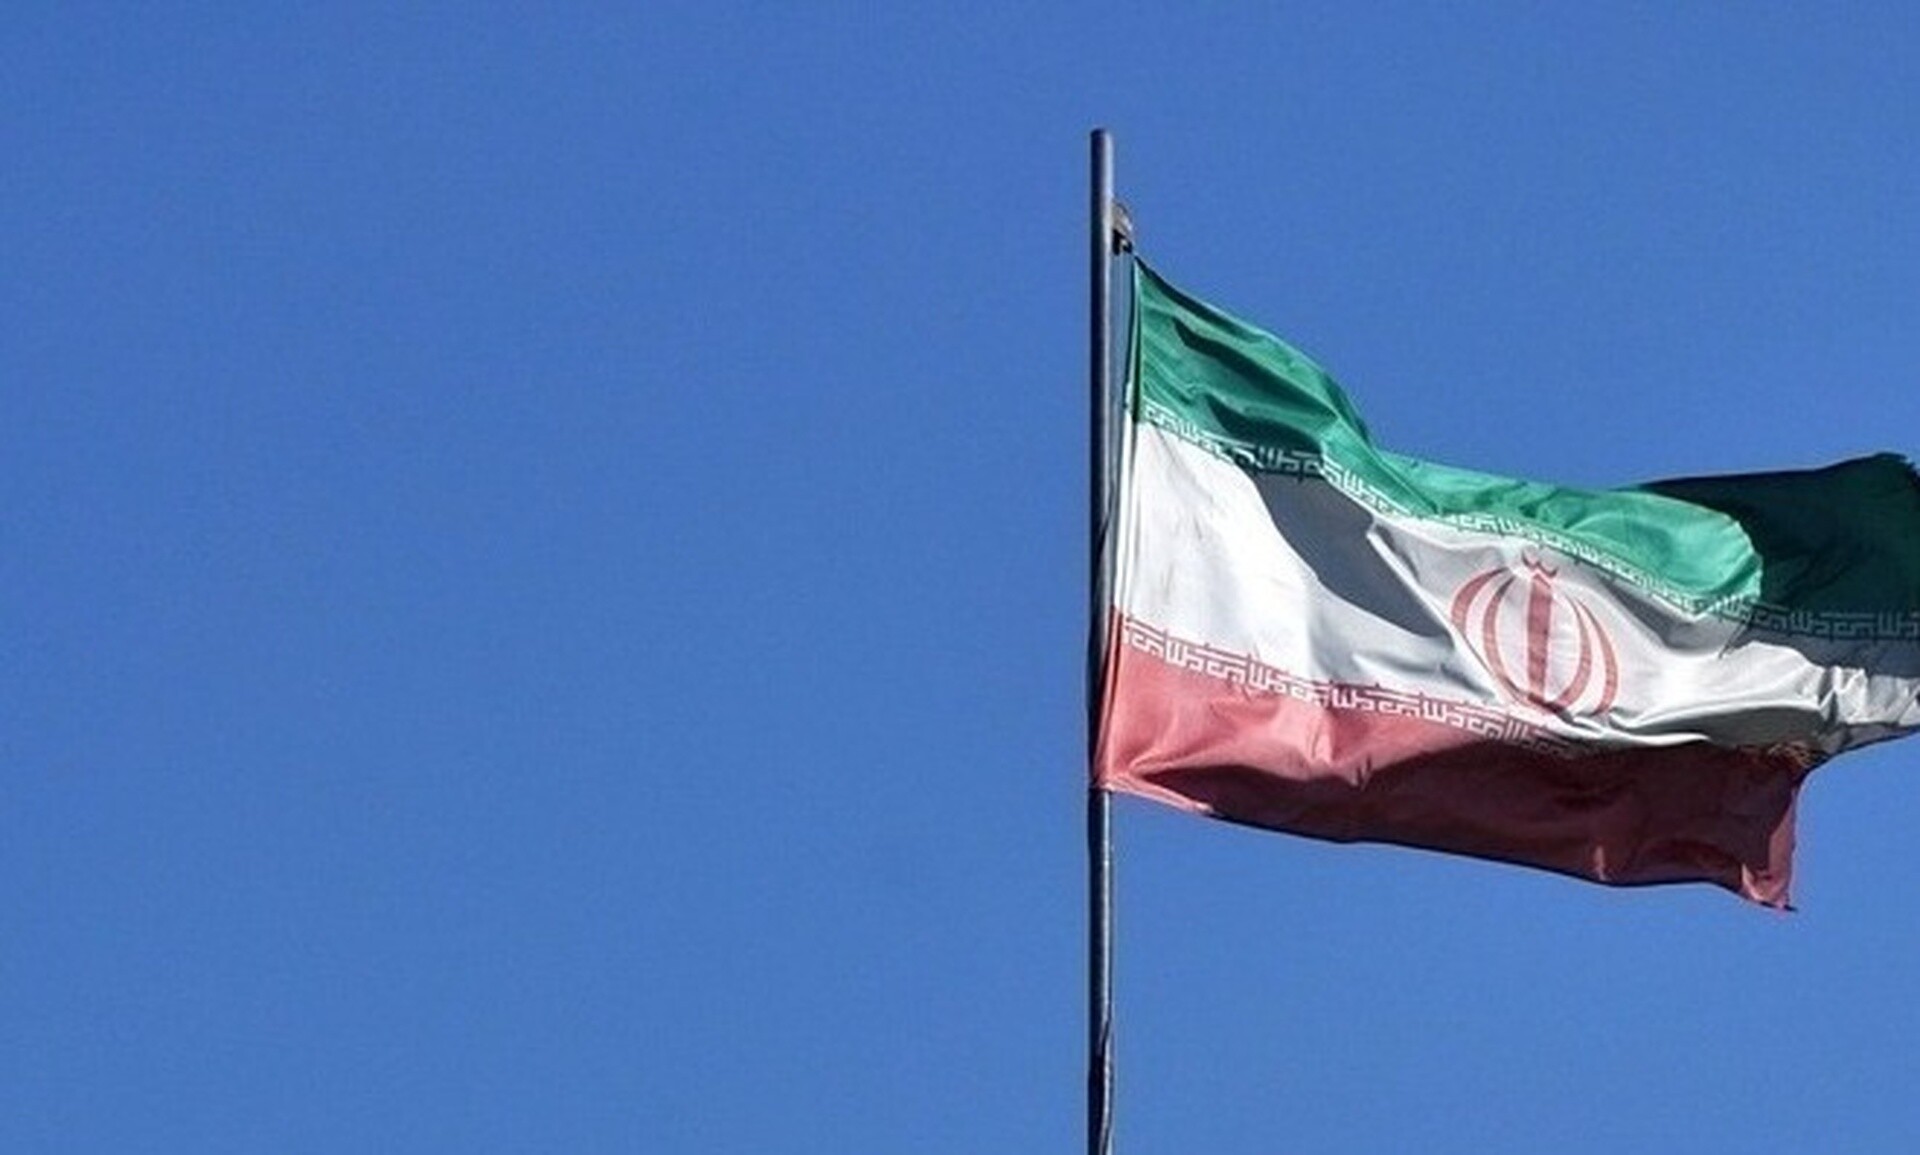 Το Ιράν ενημέρωσε την Τουρκία, το Κατάρ, την Ελβετία και τις ΗΠΑ πριν επιτεθεί στο Ισραήλ